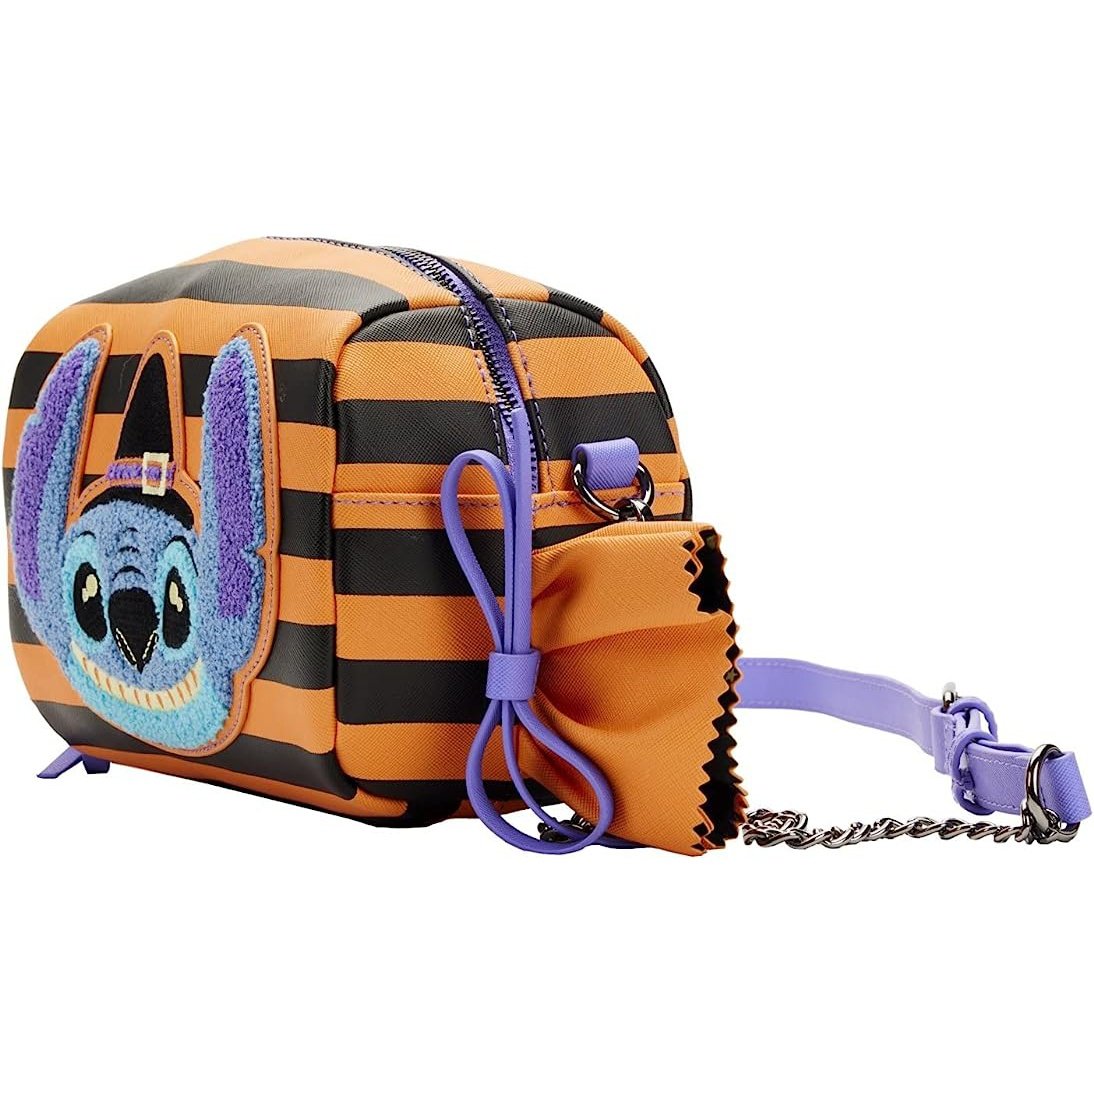 Mitz Upcycled Candy Wrappers Bag Shoulder Handbag Purse | eBay